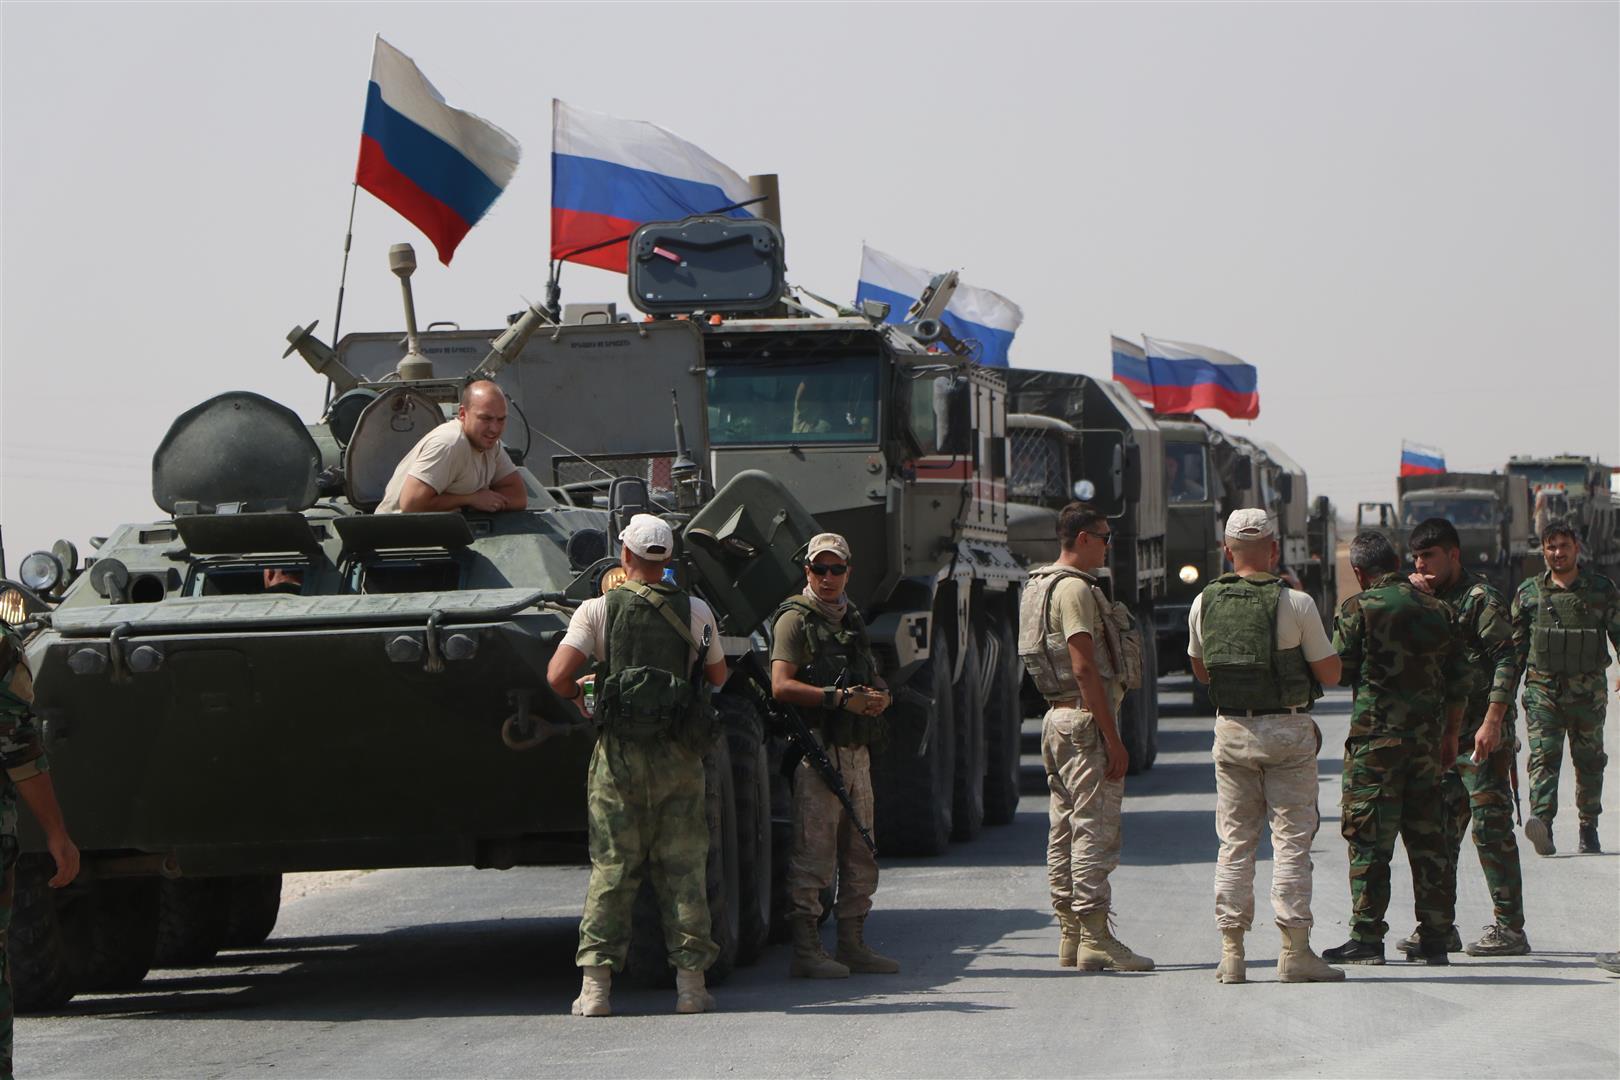 دوافع التحركات الروسية العسكرية في البادية السورية